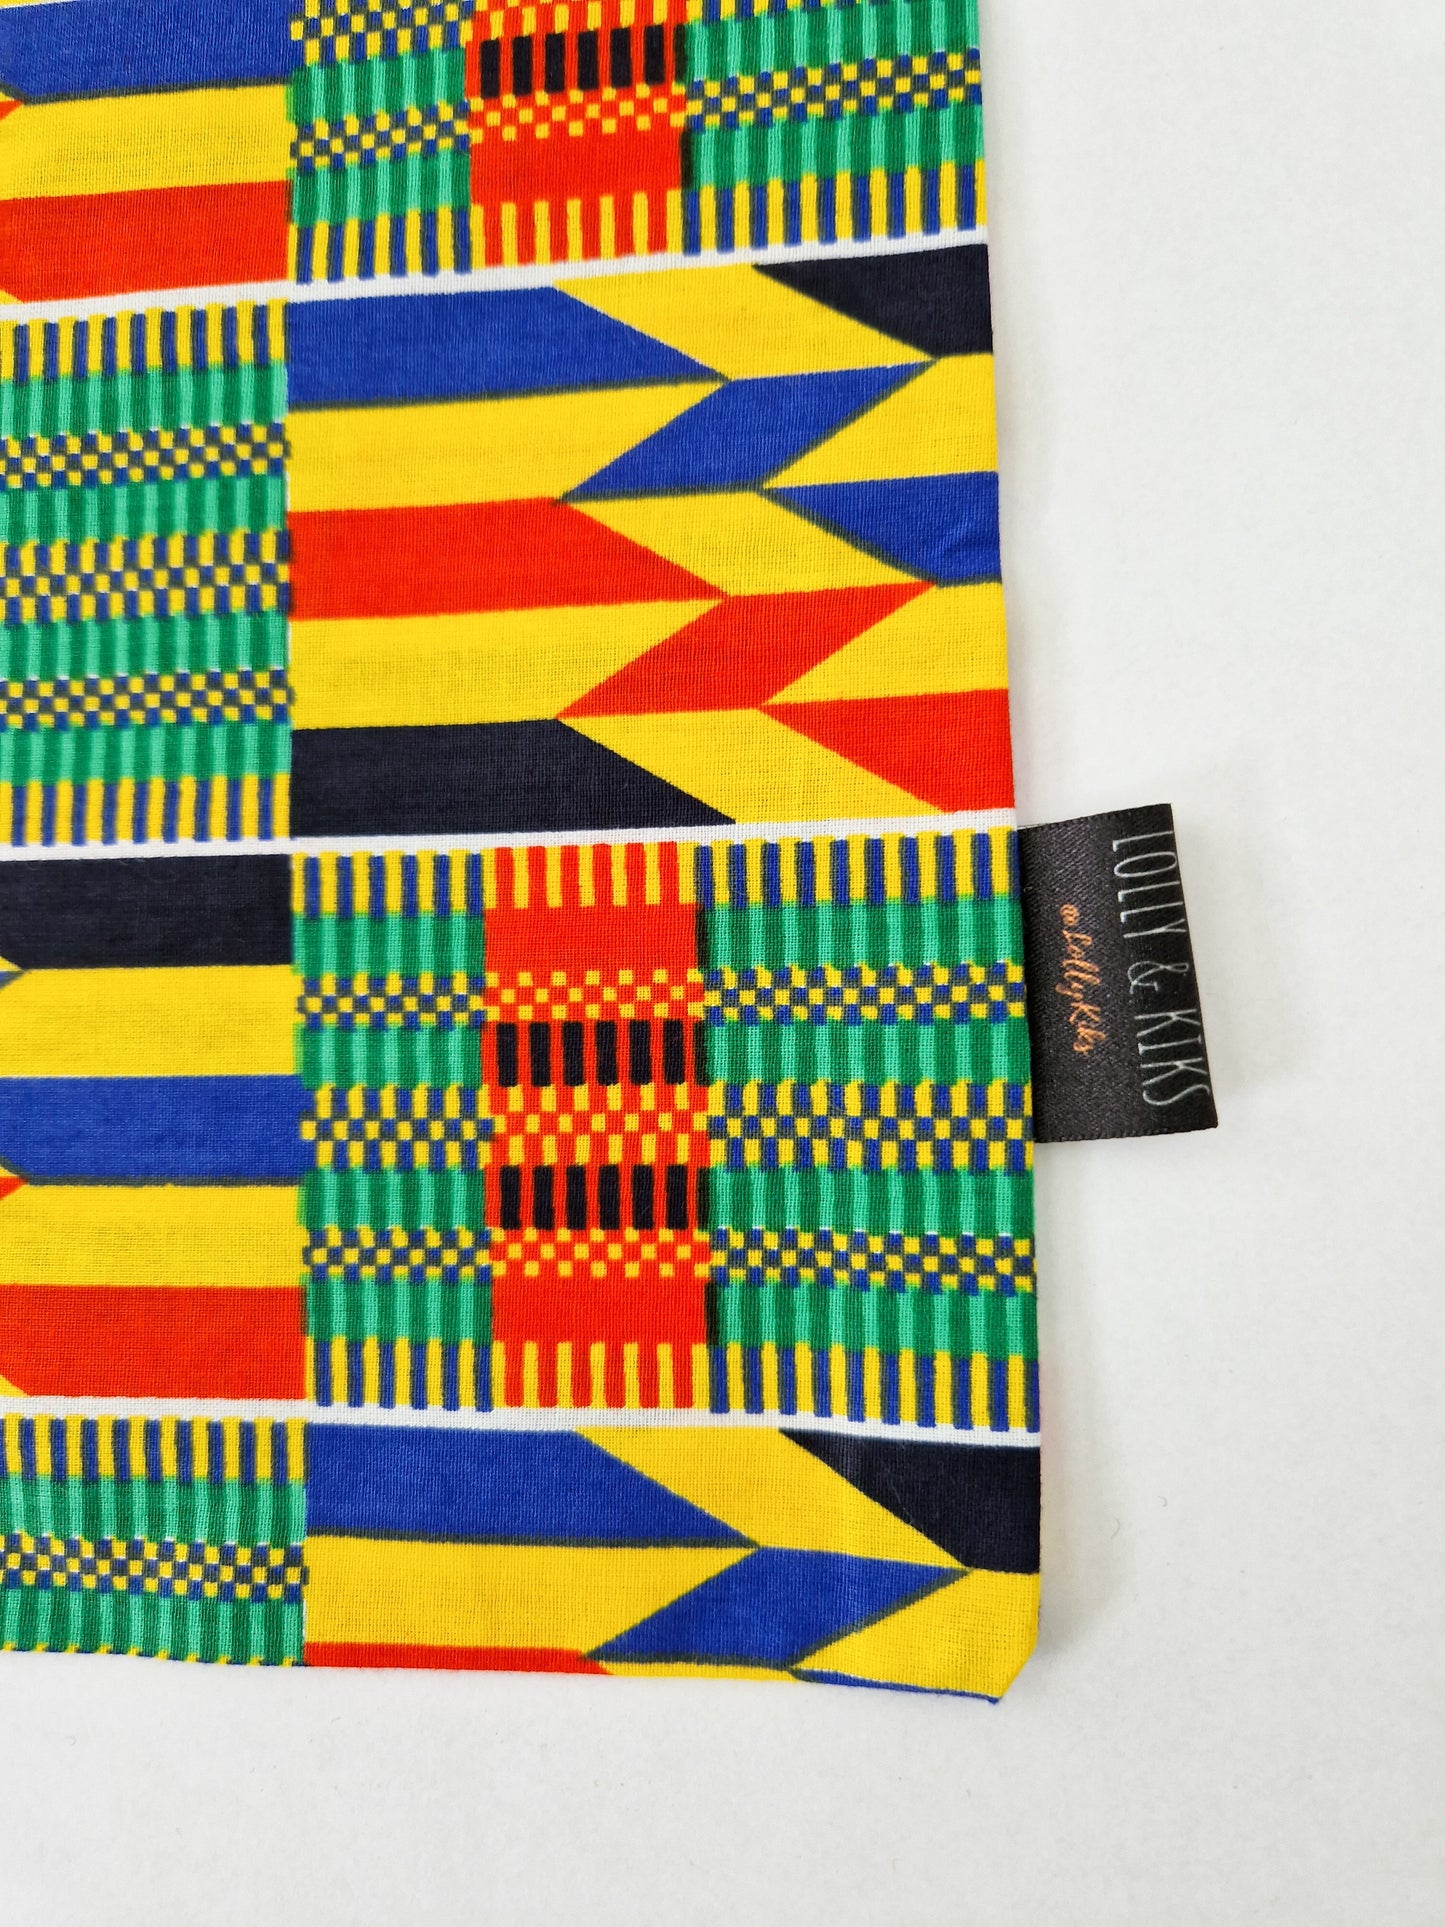 African Print Tote Bag | Kioko Print